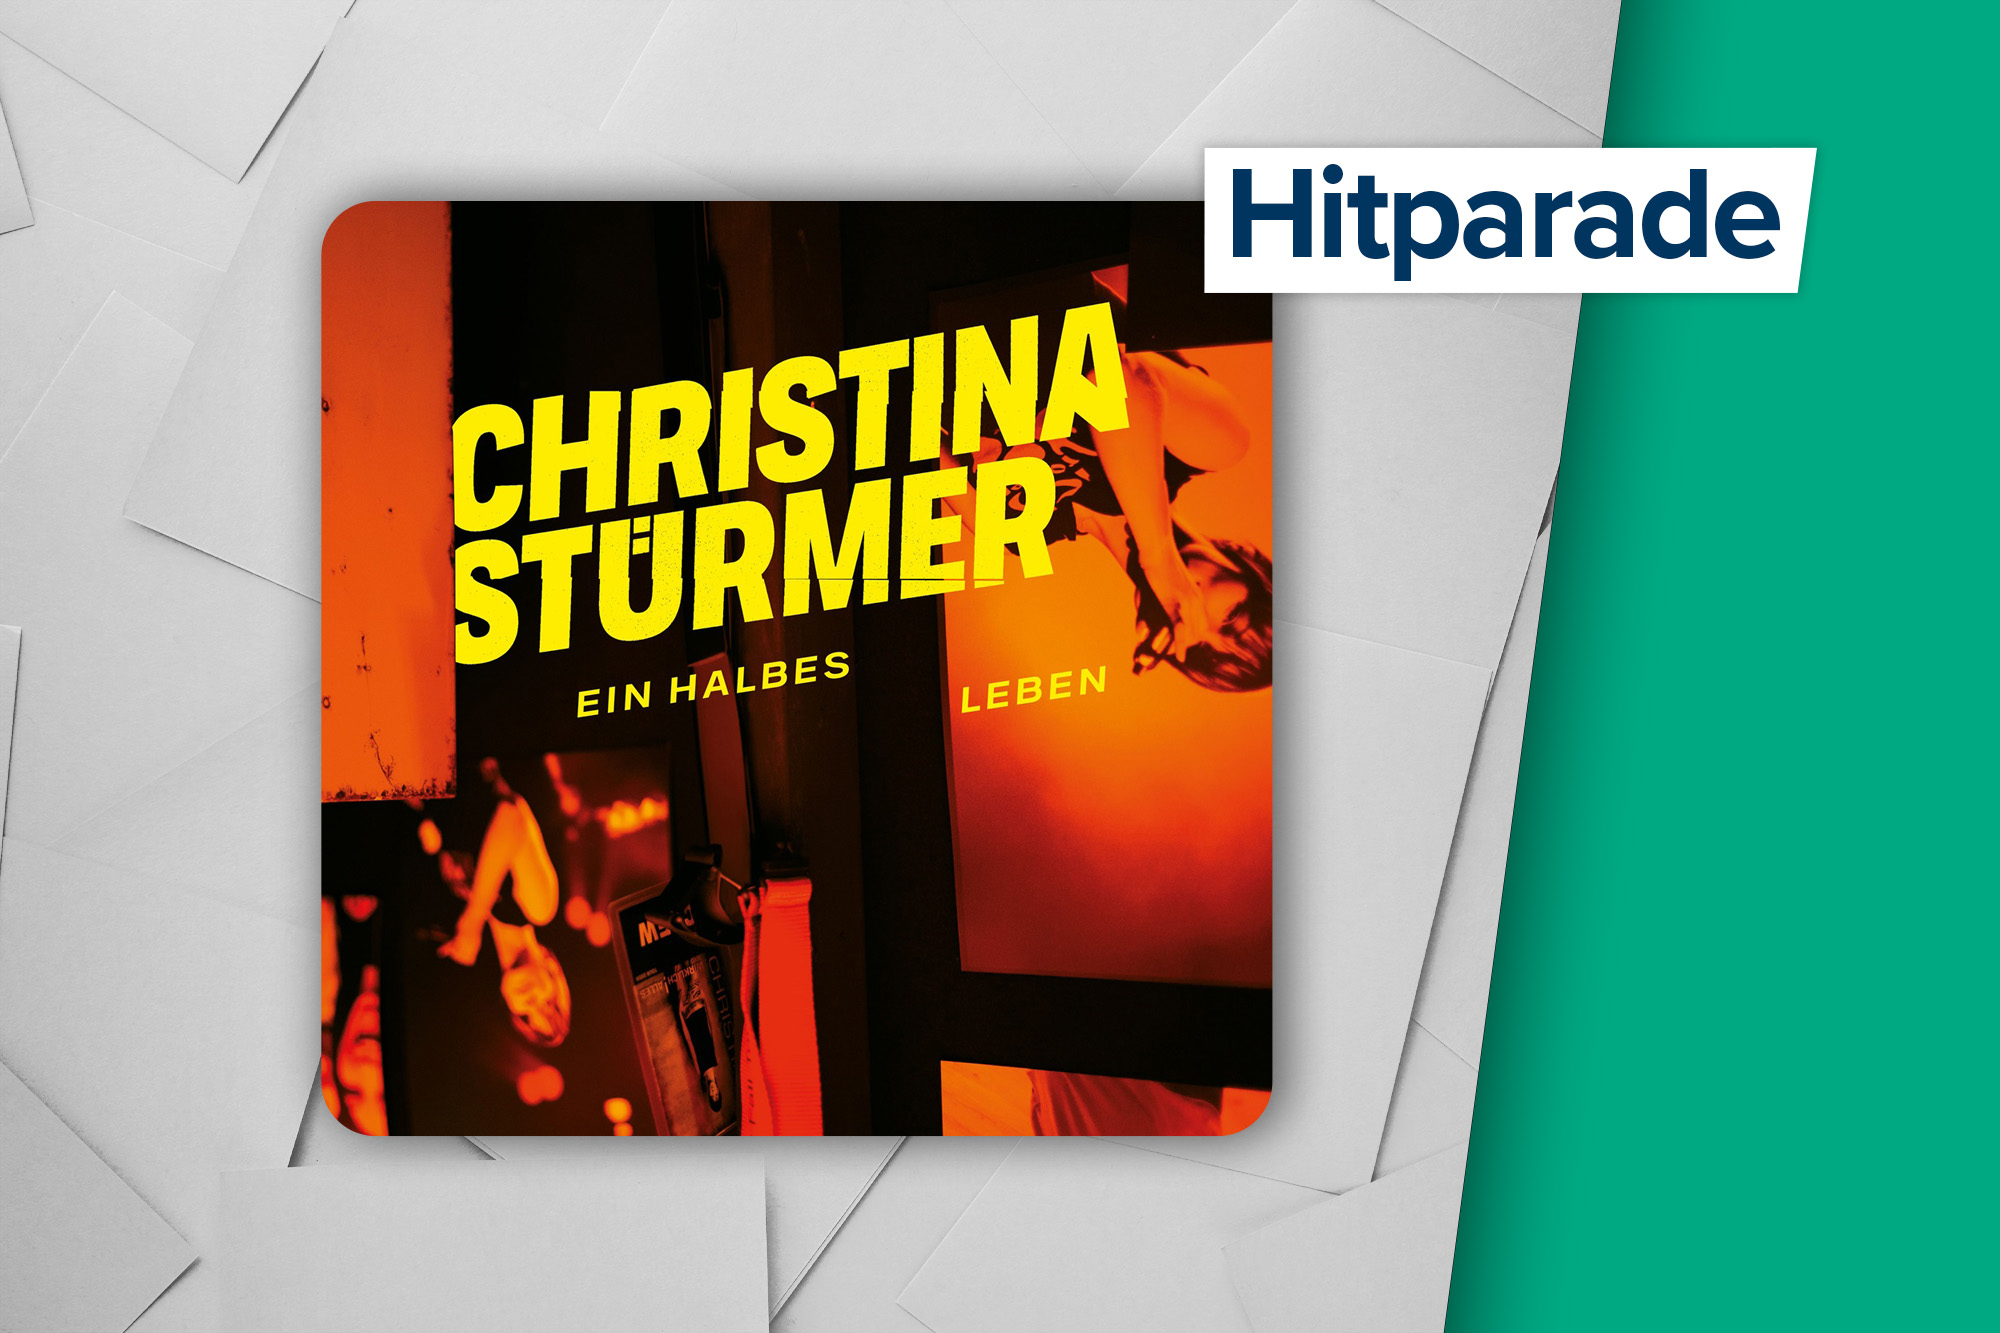 "Ein halbes Leben" von Christina Stürmer (Label: SMD/ Columbia)